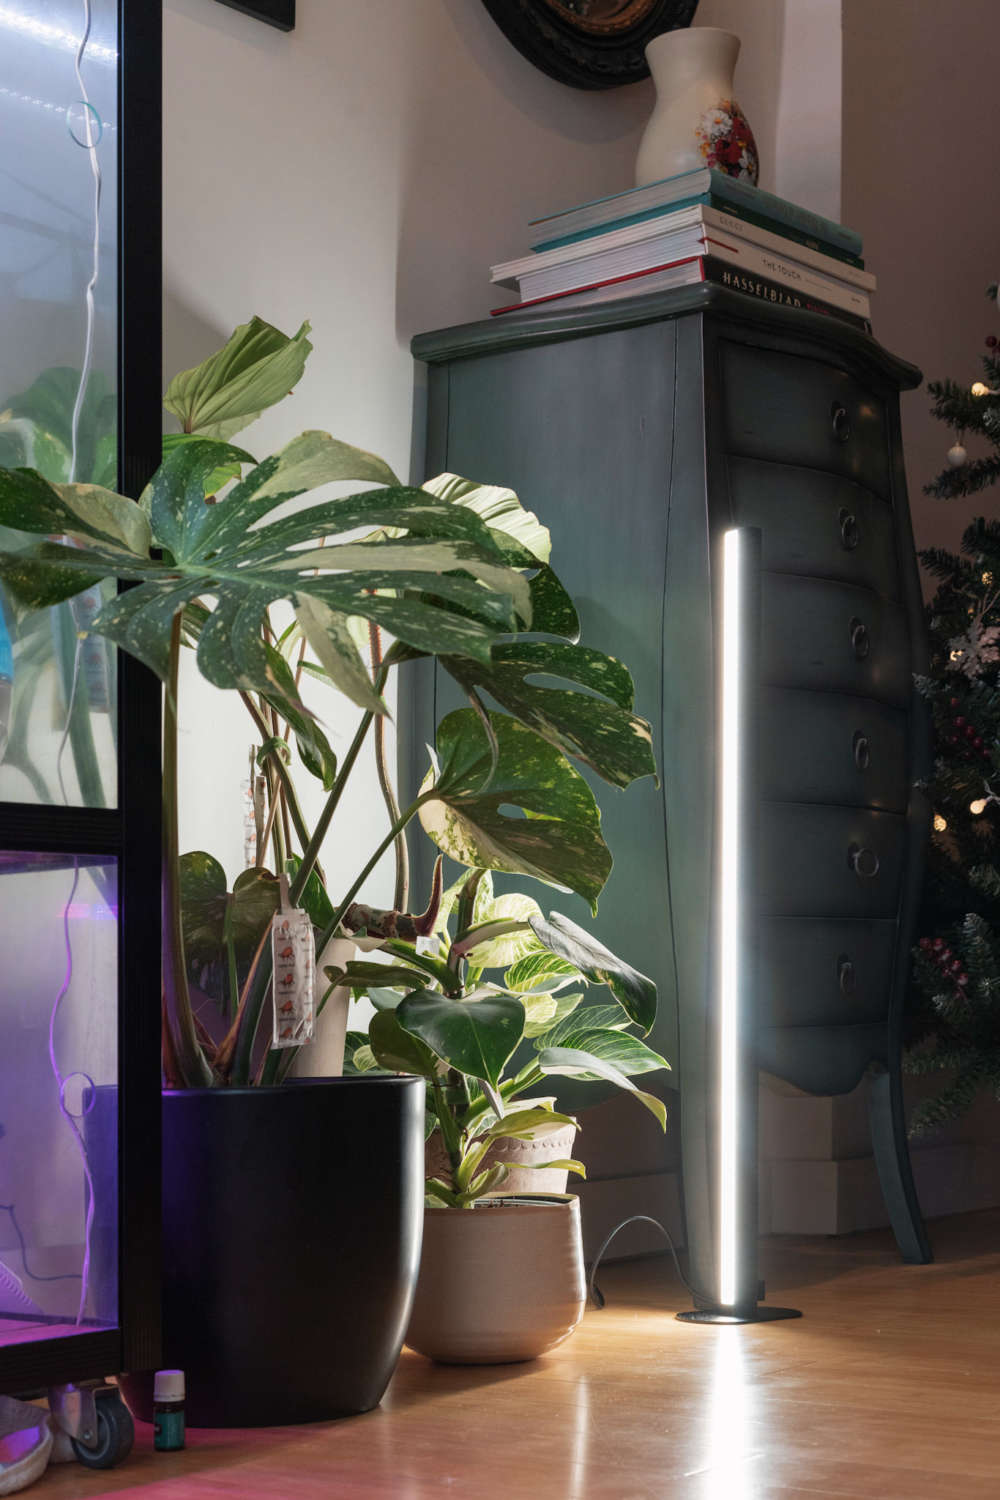 Best Grow Lights for Indoor Plants Mother Life Plant Spectrum32